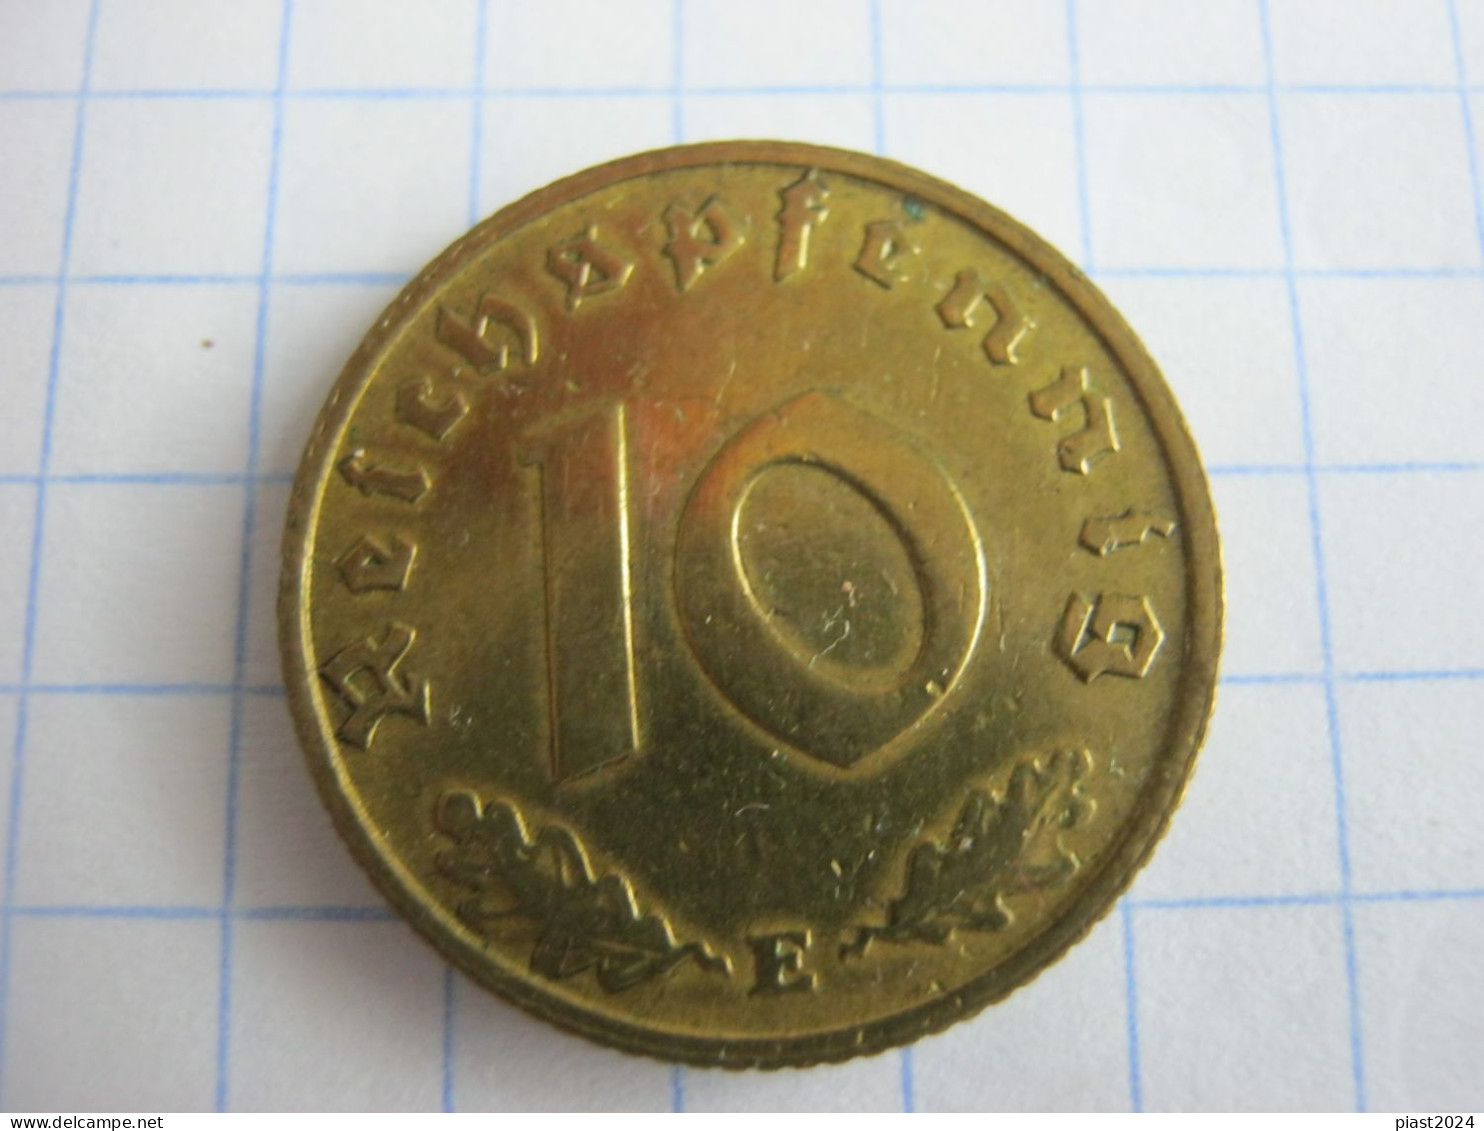 Germany 10 Reichspfennig 1938 E - 10 Reichspfennig